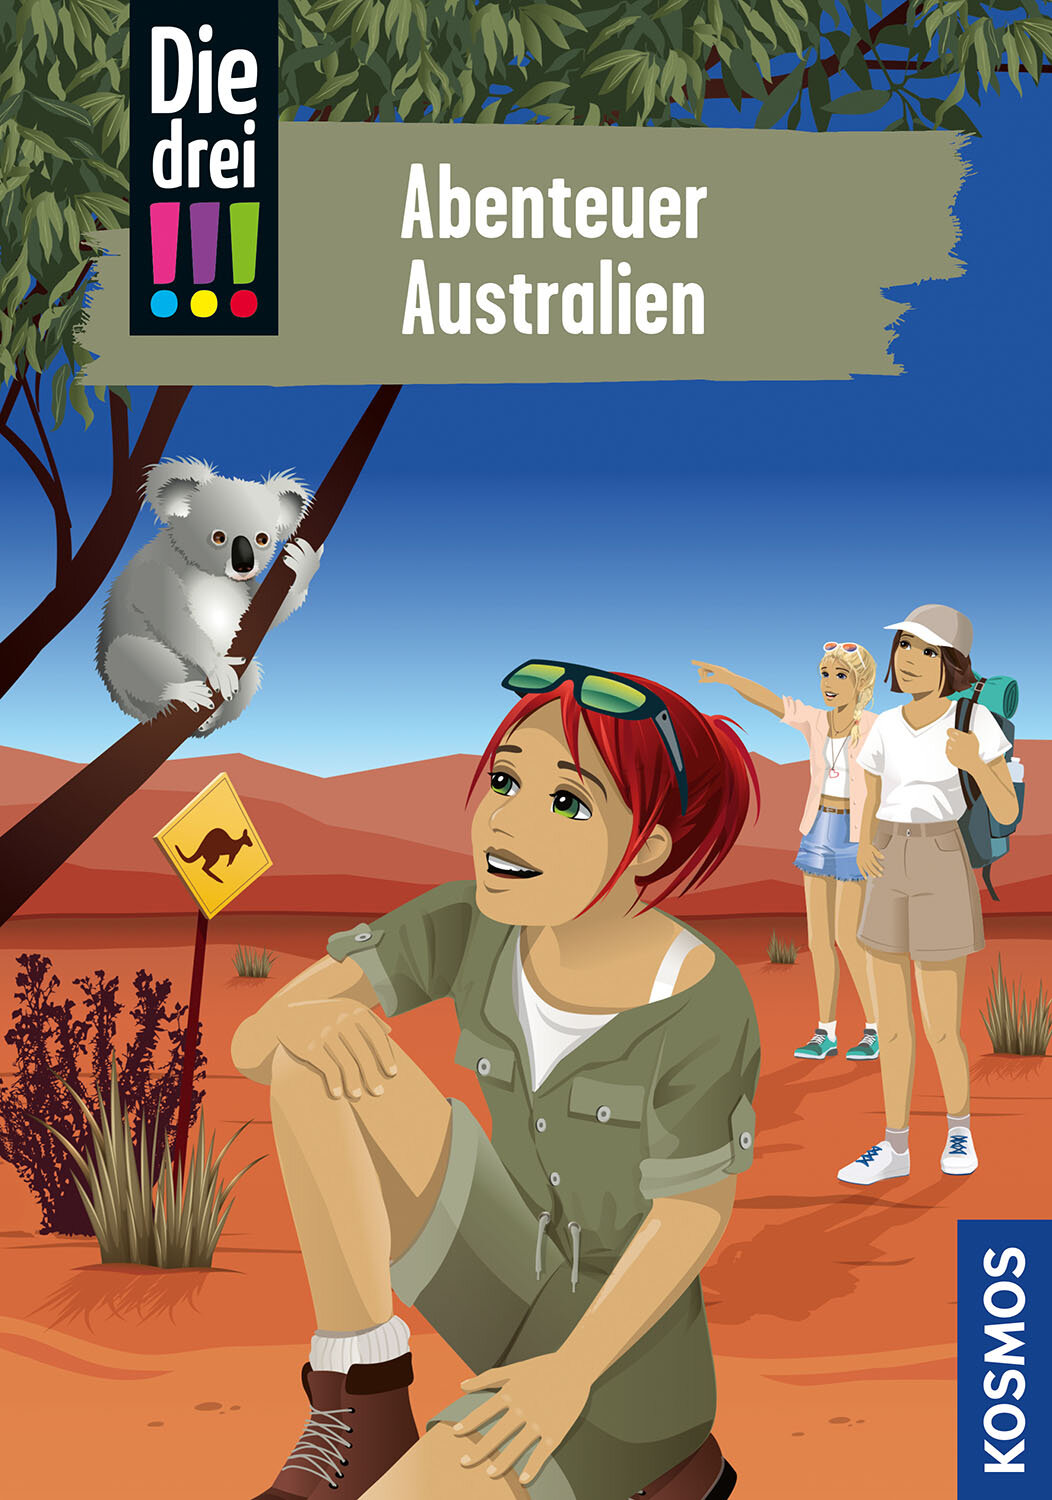 Die drei !!!  106  Abenteuer Australien